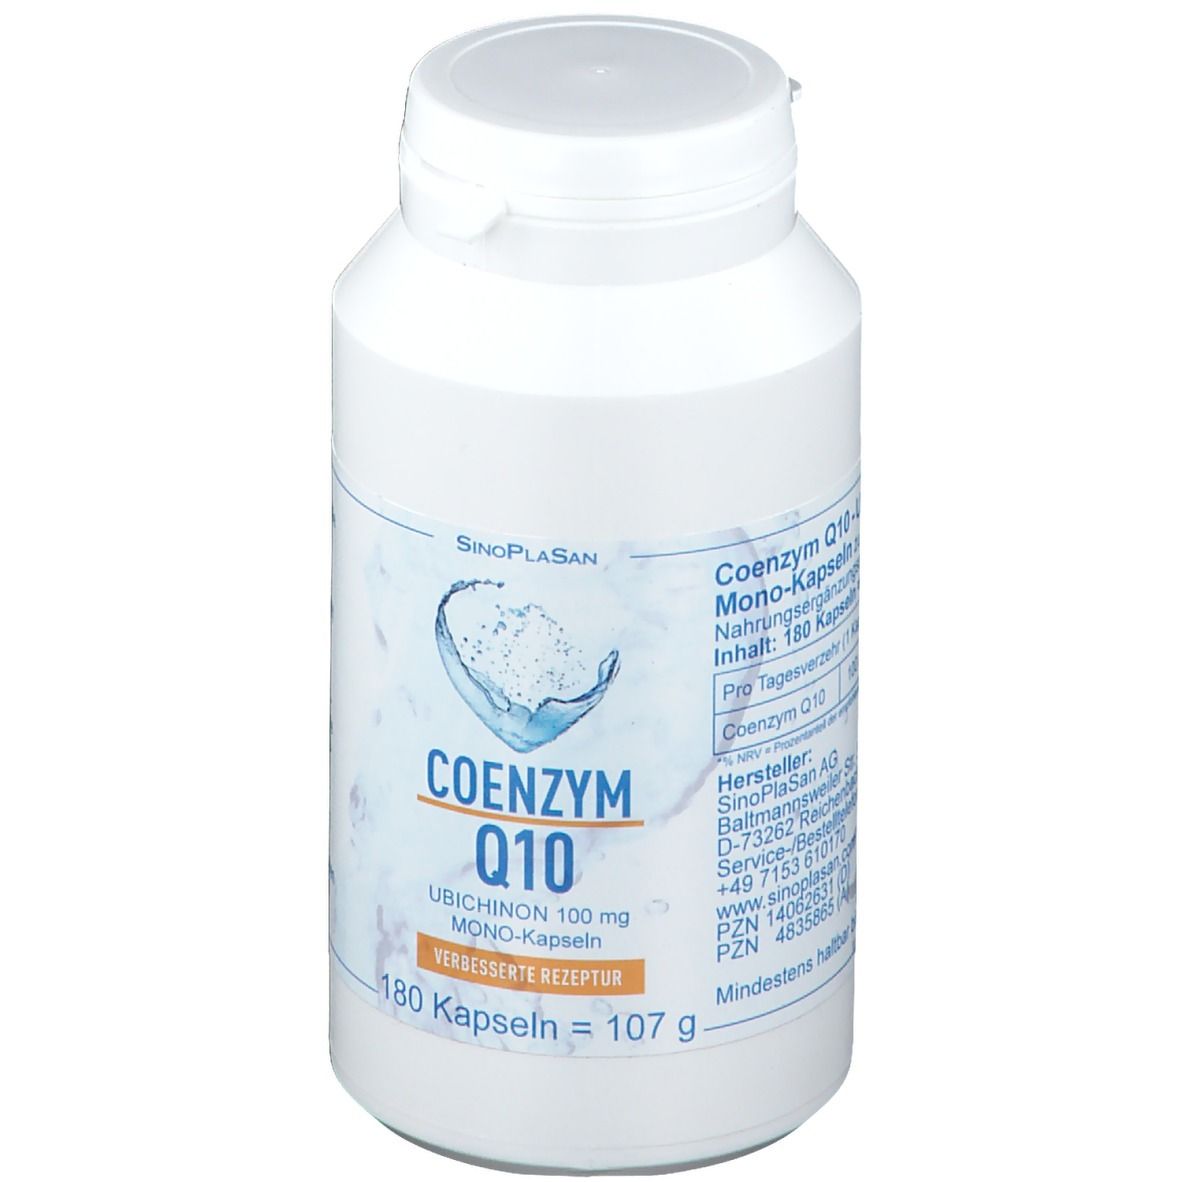 SinoPlaSan Coenzym Q10 100 mg